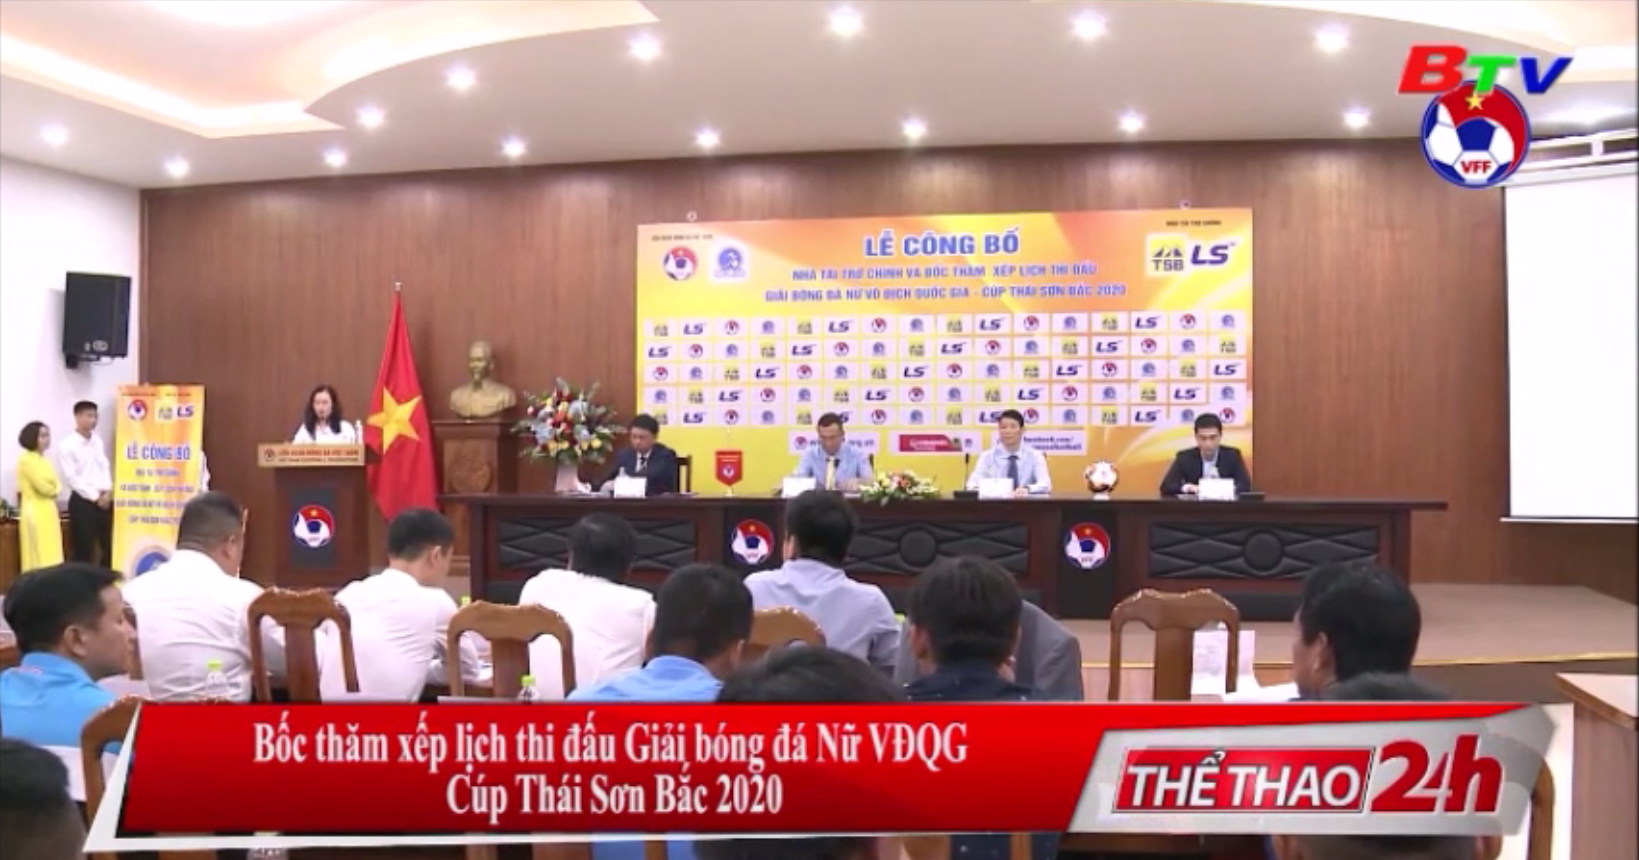 Bốc thăm xếp lịch thi đấu Giải bóng đá nữ VĐQG Cúp Thái Sơn Bắc 2020